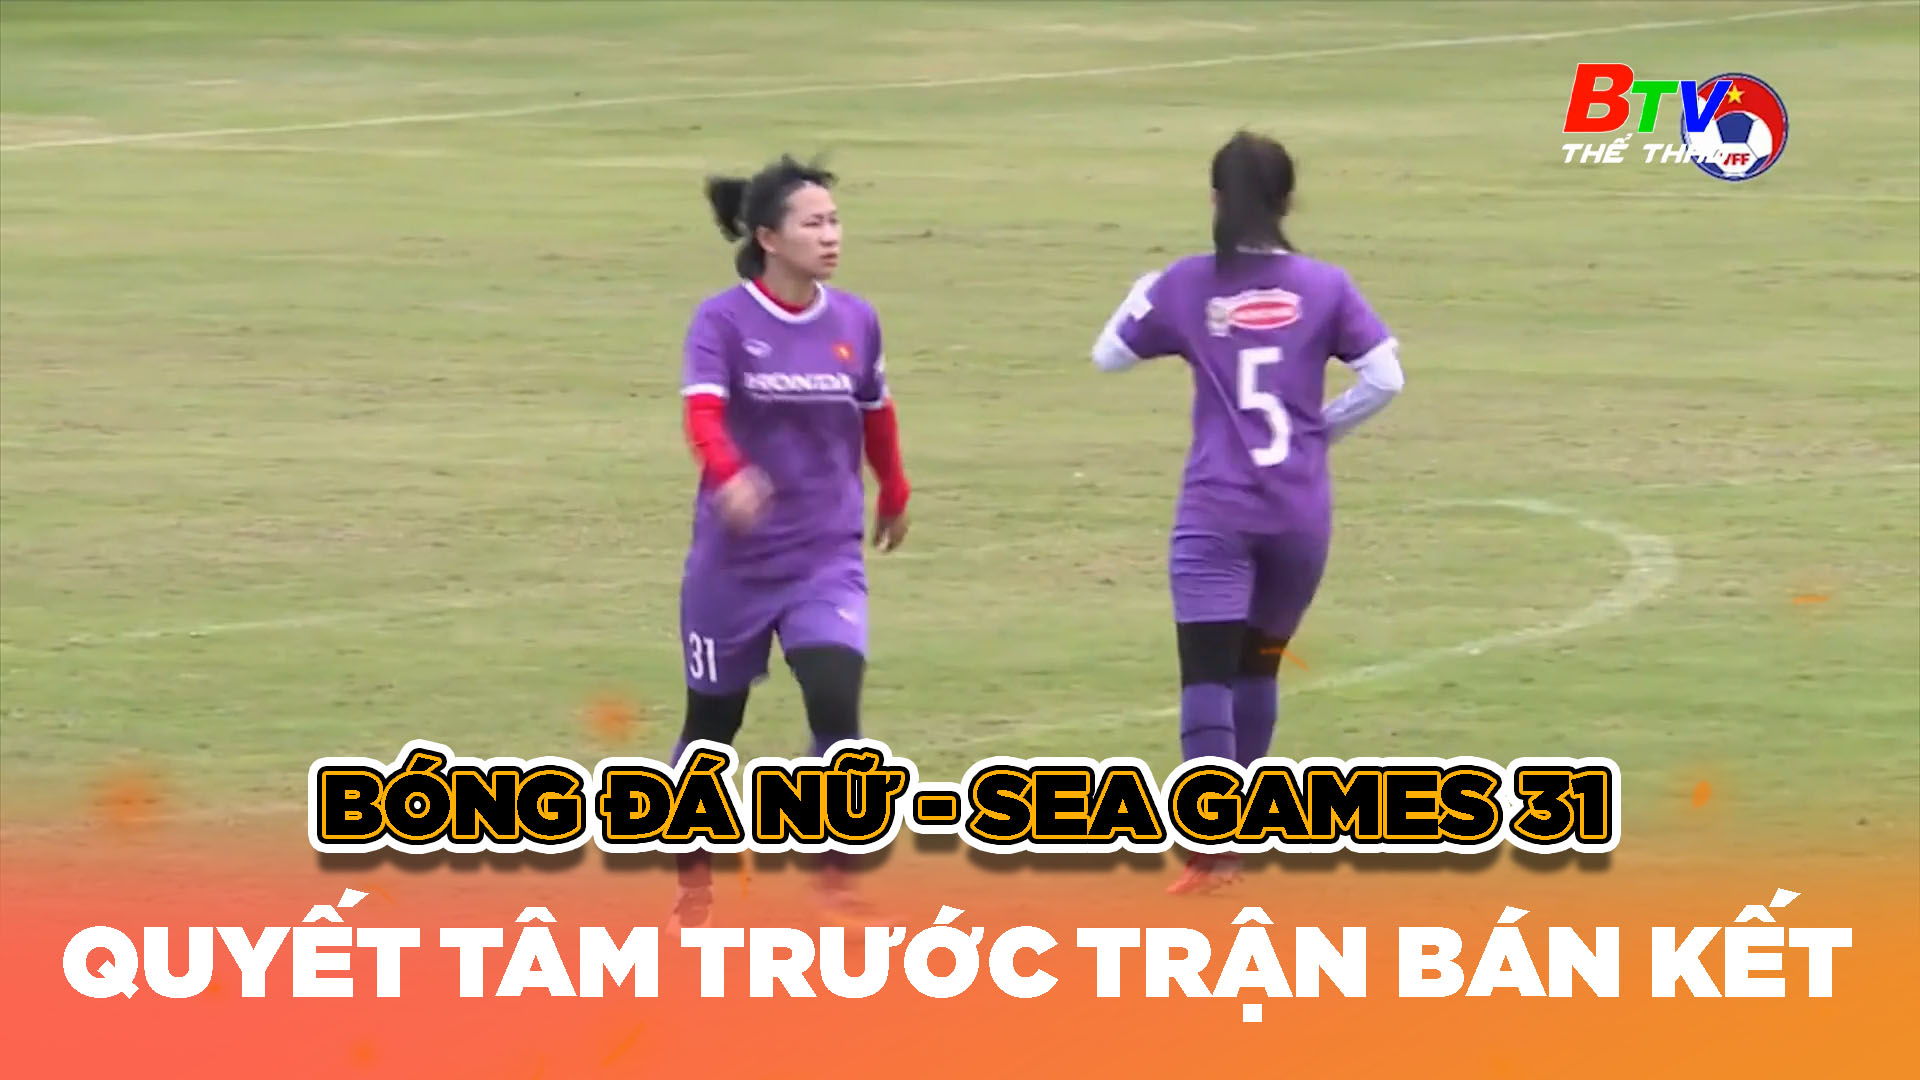 Bán kết bóng đá nữ SEA Games 31 – Trước trận Việt Nam - Myanma